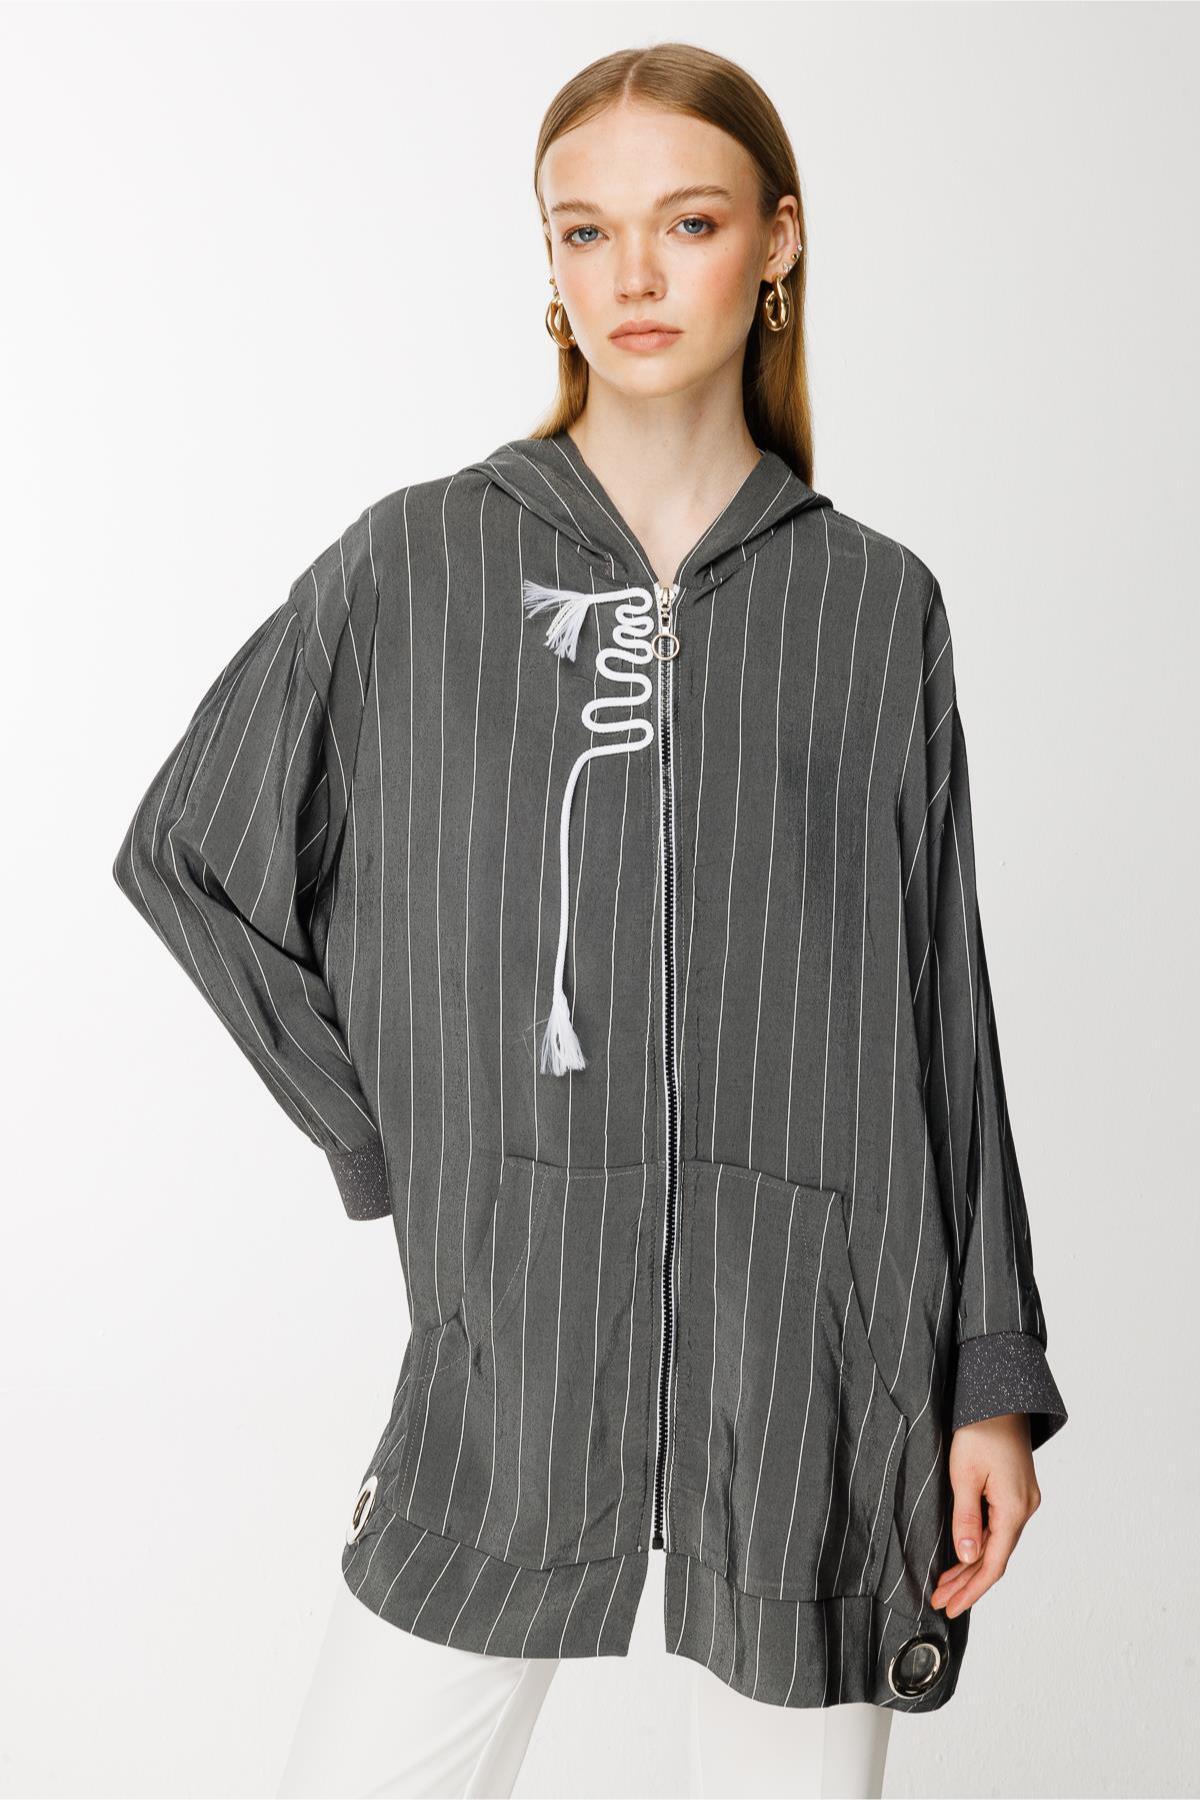 Kapüşonlu Fermuarlı Ceket - Eser Giyim